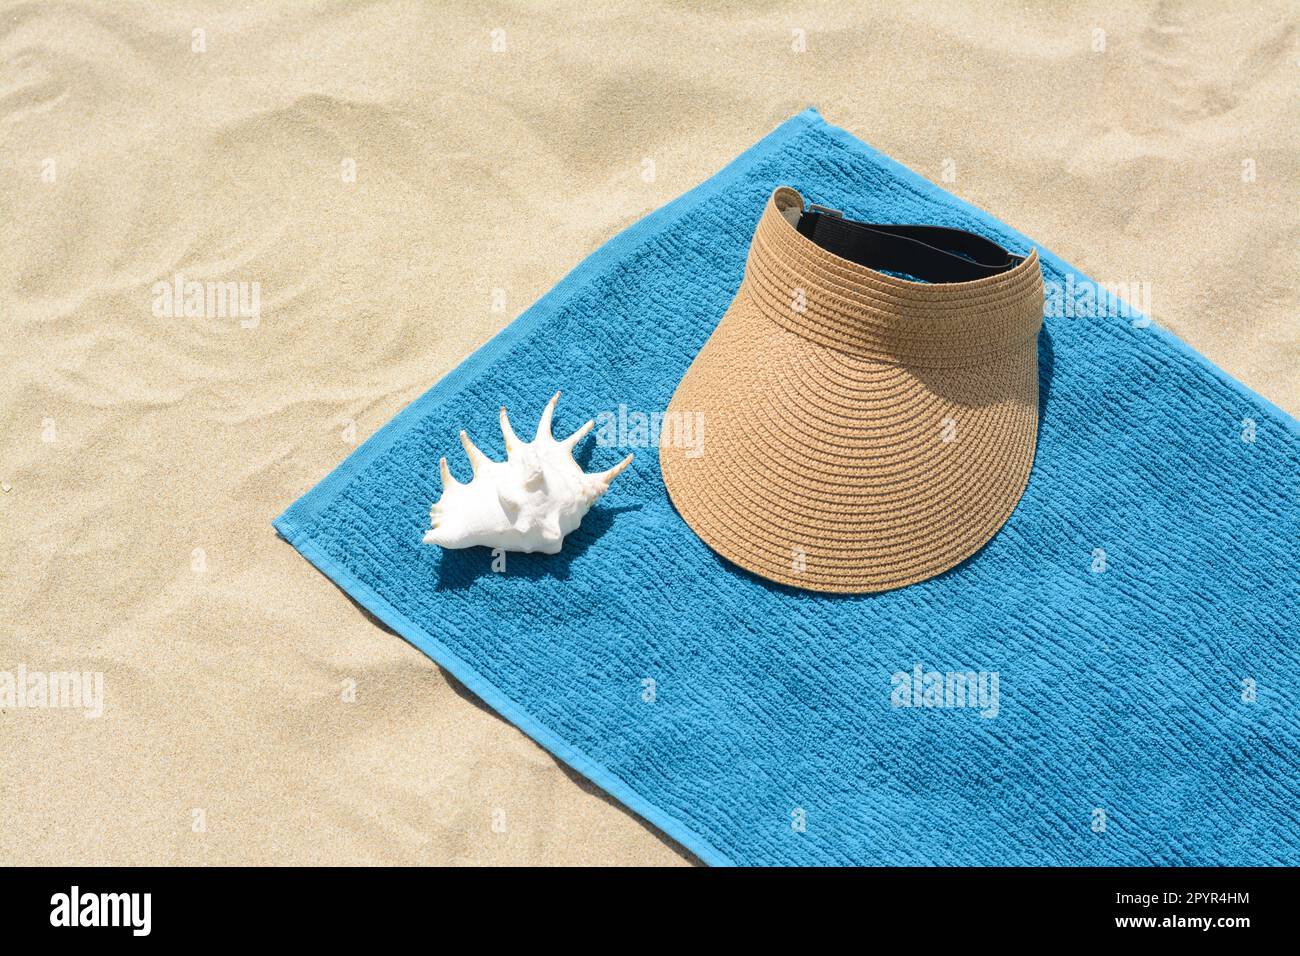 Serviette, chapeau de pare-soleil en paille et fond de mer sur sable.  Accessoires de plage Photo Stock - Alamy